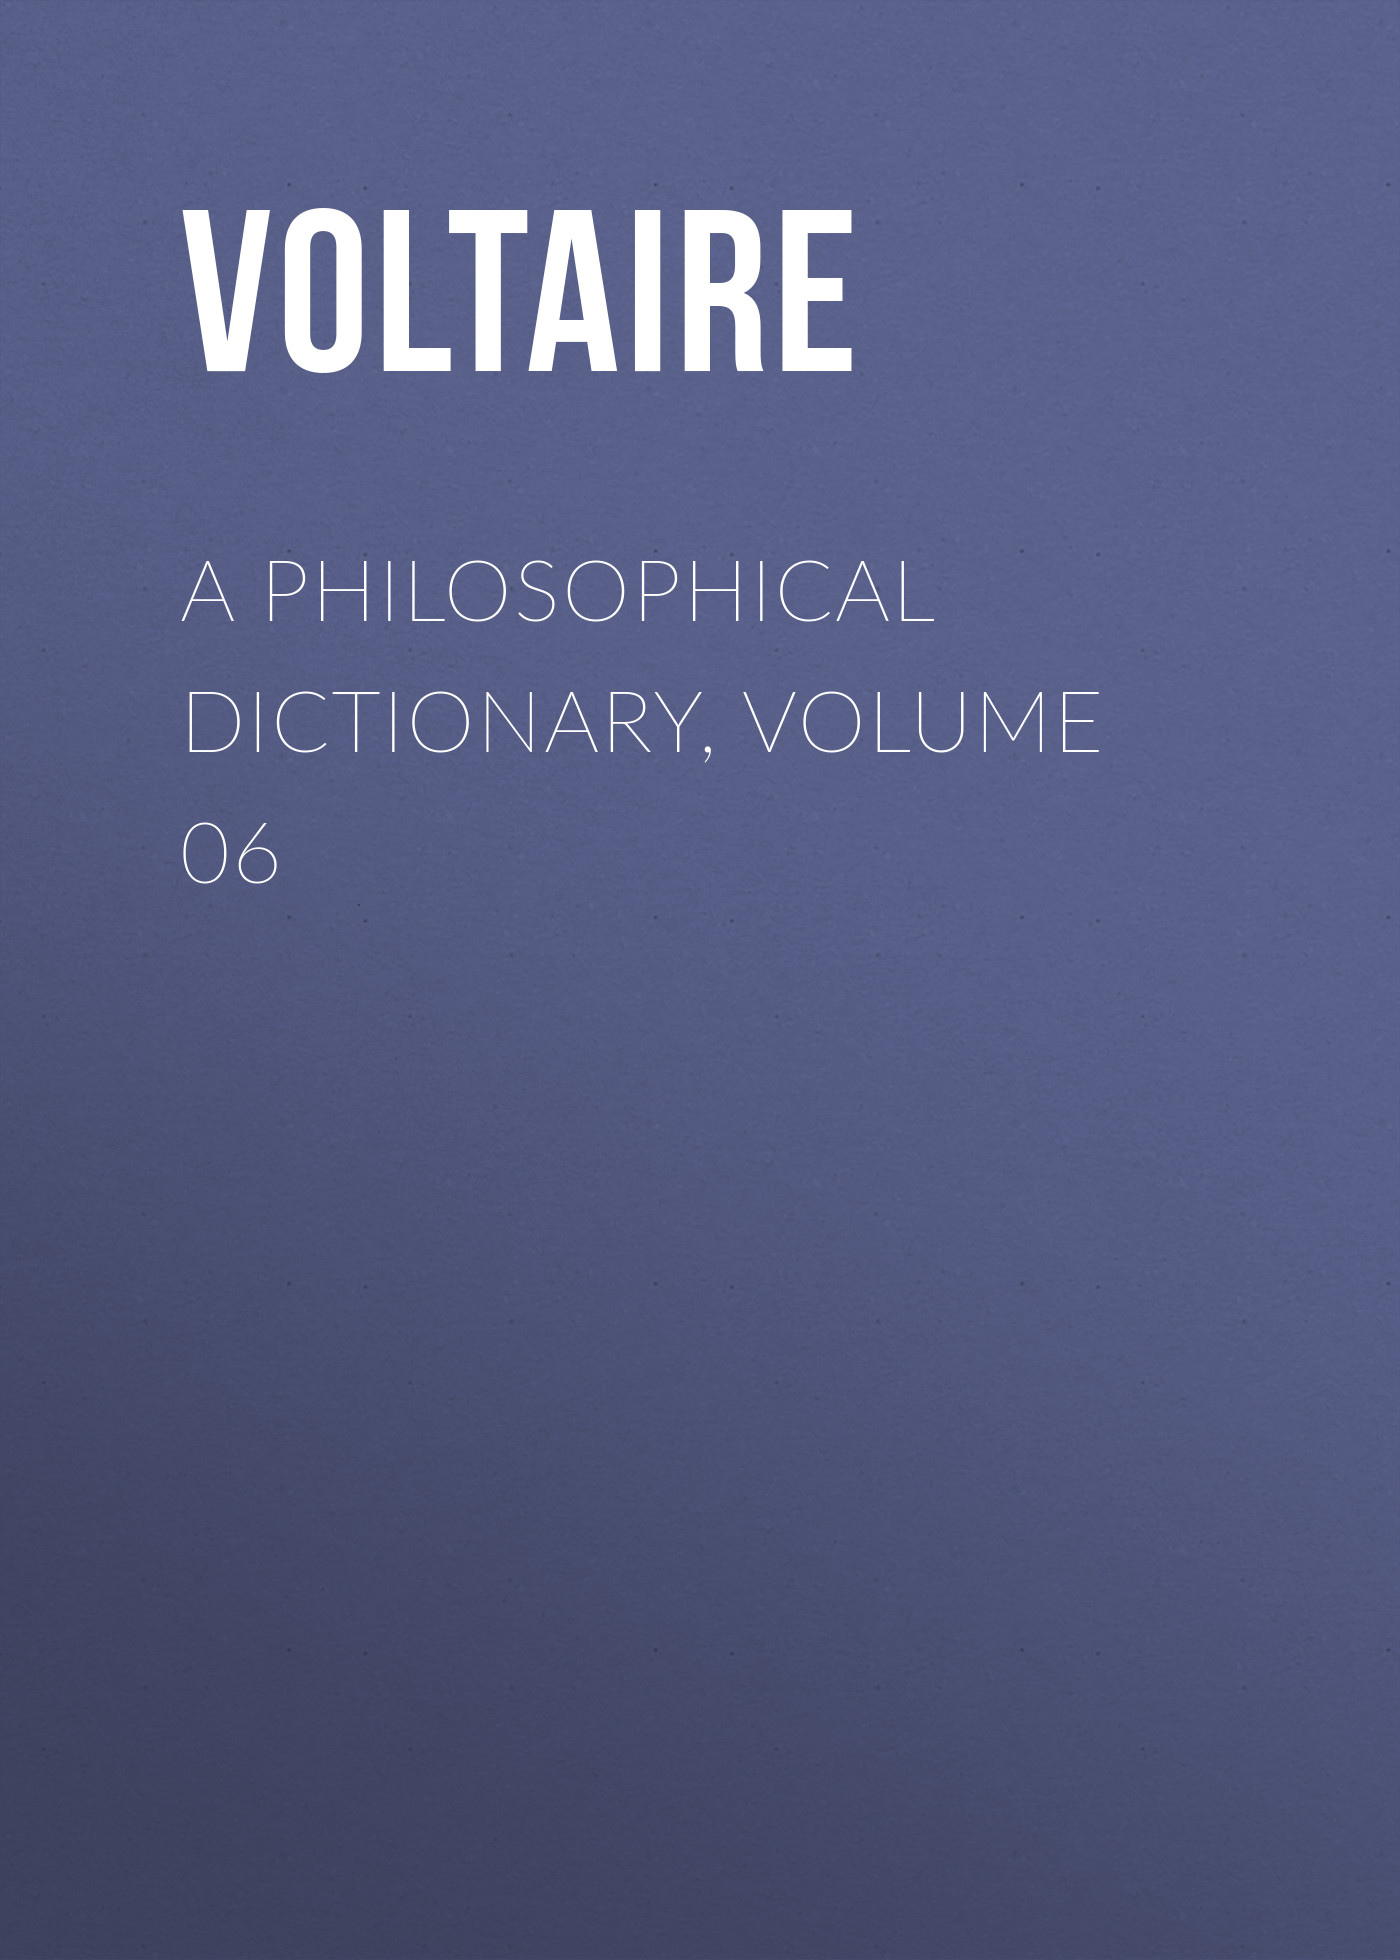 Книга A Philosophical Dictionary, Volume 06 из серии , созданная  Voltaire, может относится к жанру Философия, Литература 18 века, Зарубежная классика. Стоимость электронной книги A Philosophical Dictionary, Volume 06 с идентификатором 25560852 составляет 0 руб.